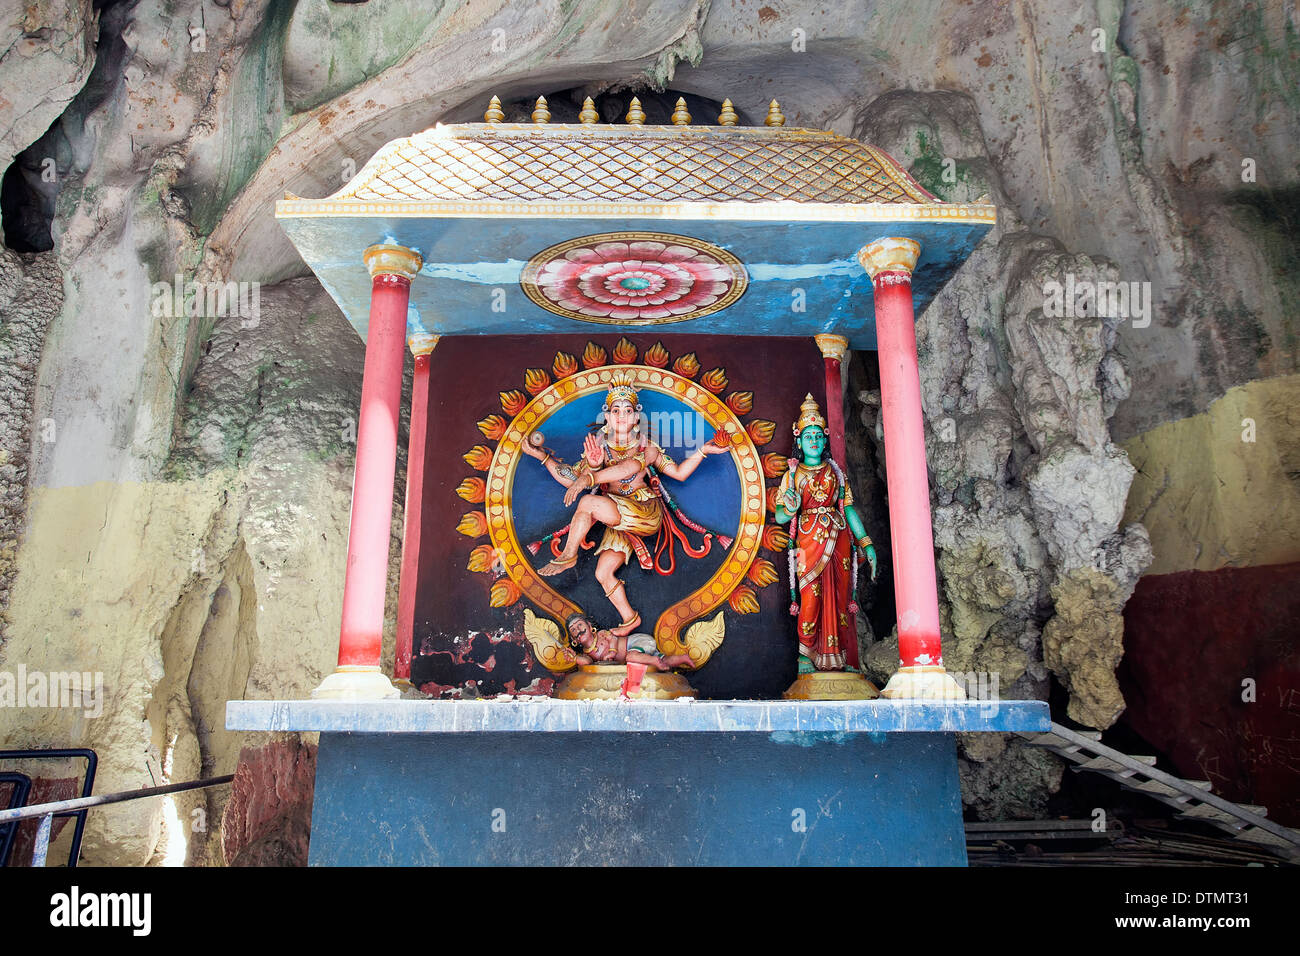 Santuario con la statua di Indiano danza indù dio Shiva Nataraja a Grotte Batu in Malesia Foto Stock